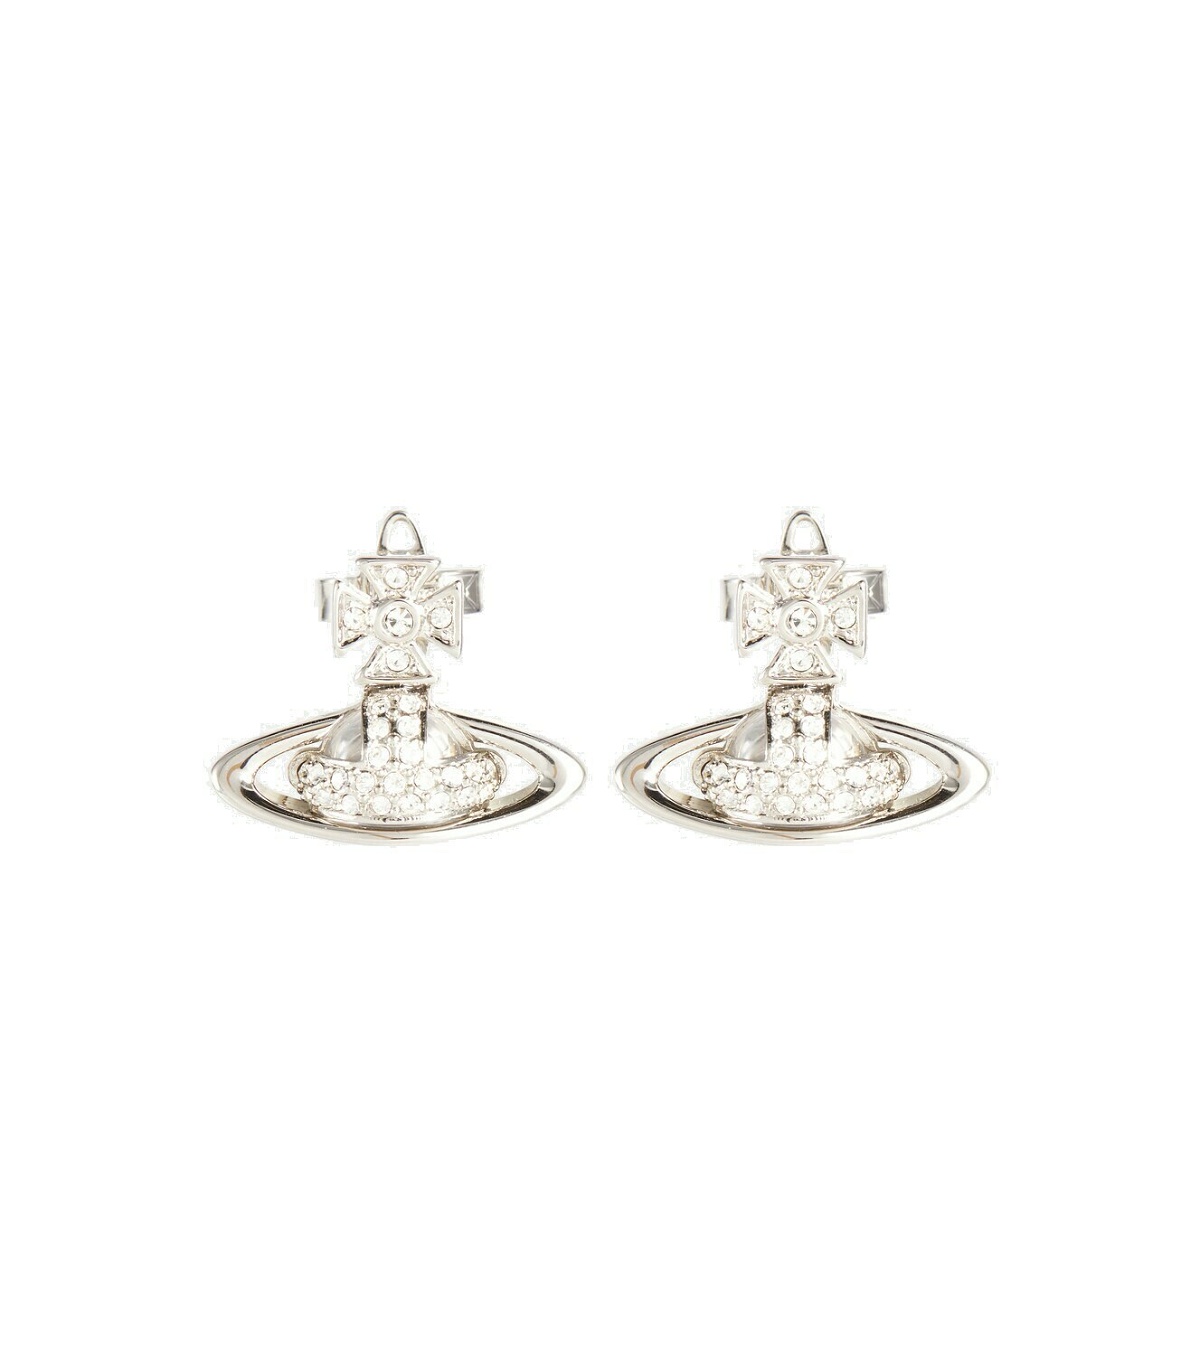 Vivienne Westwood - Sorada crystal-embellished earrings Vivienne Westwood